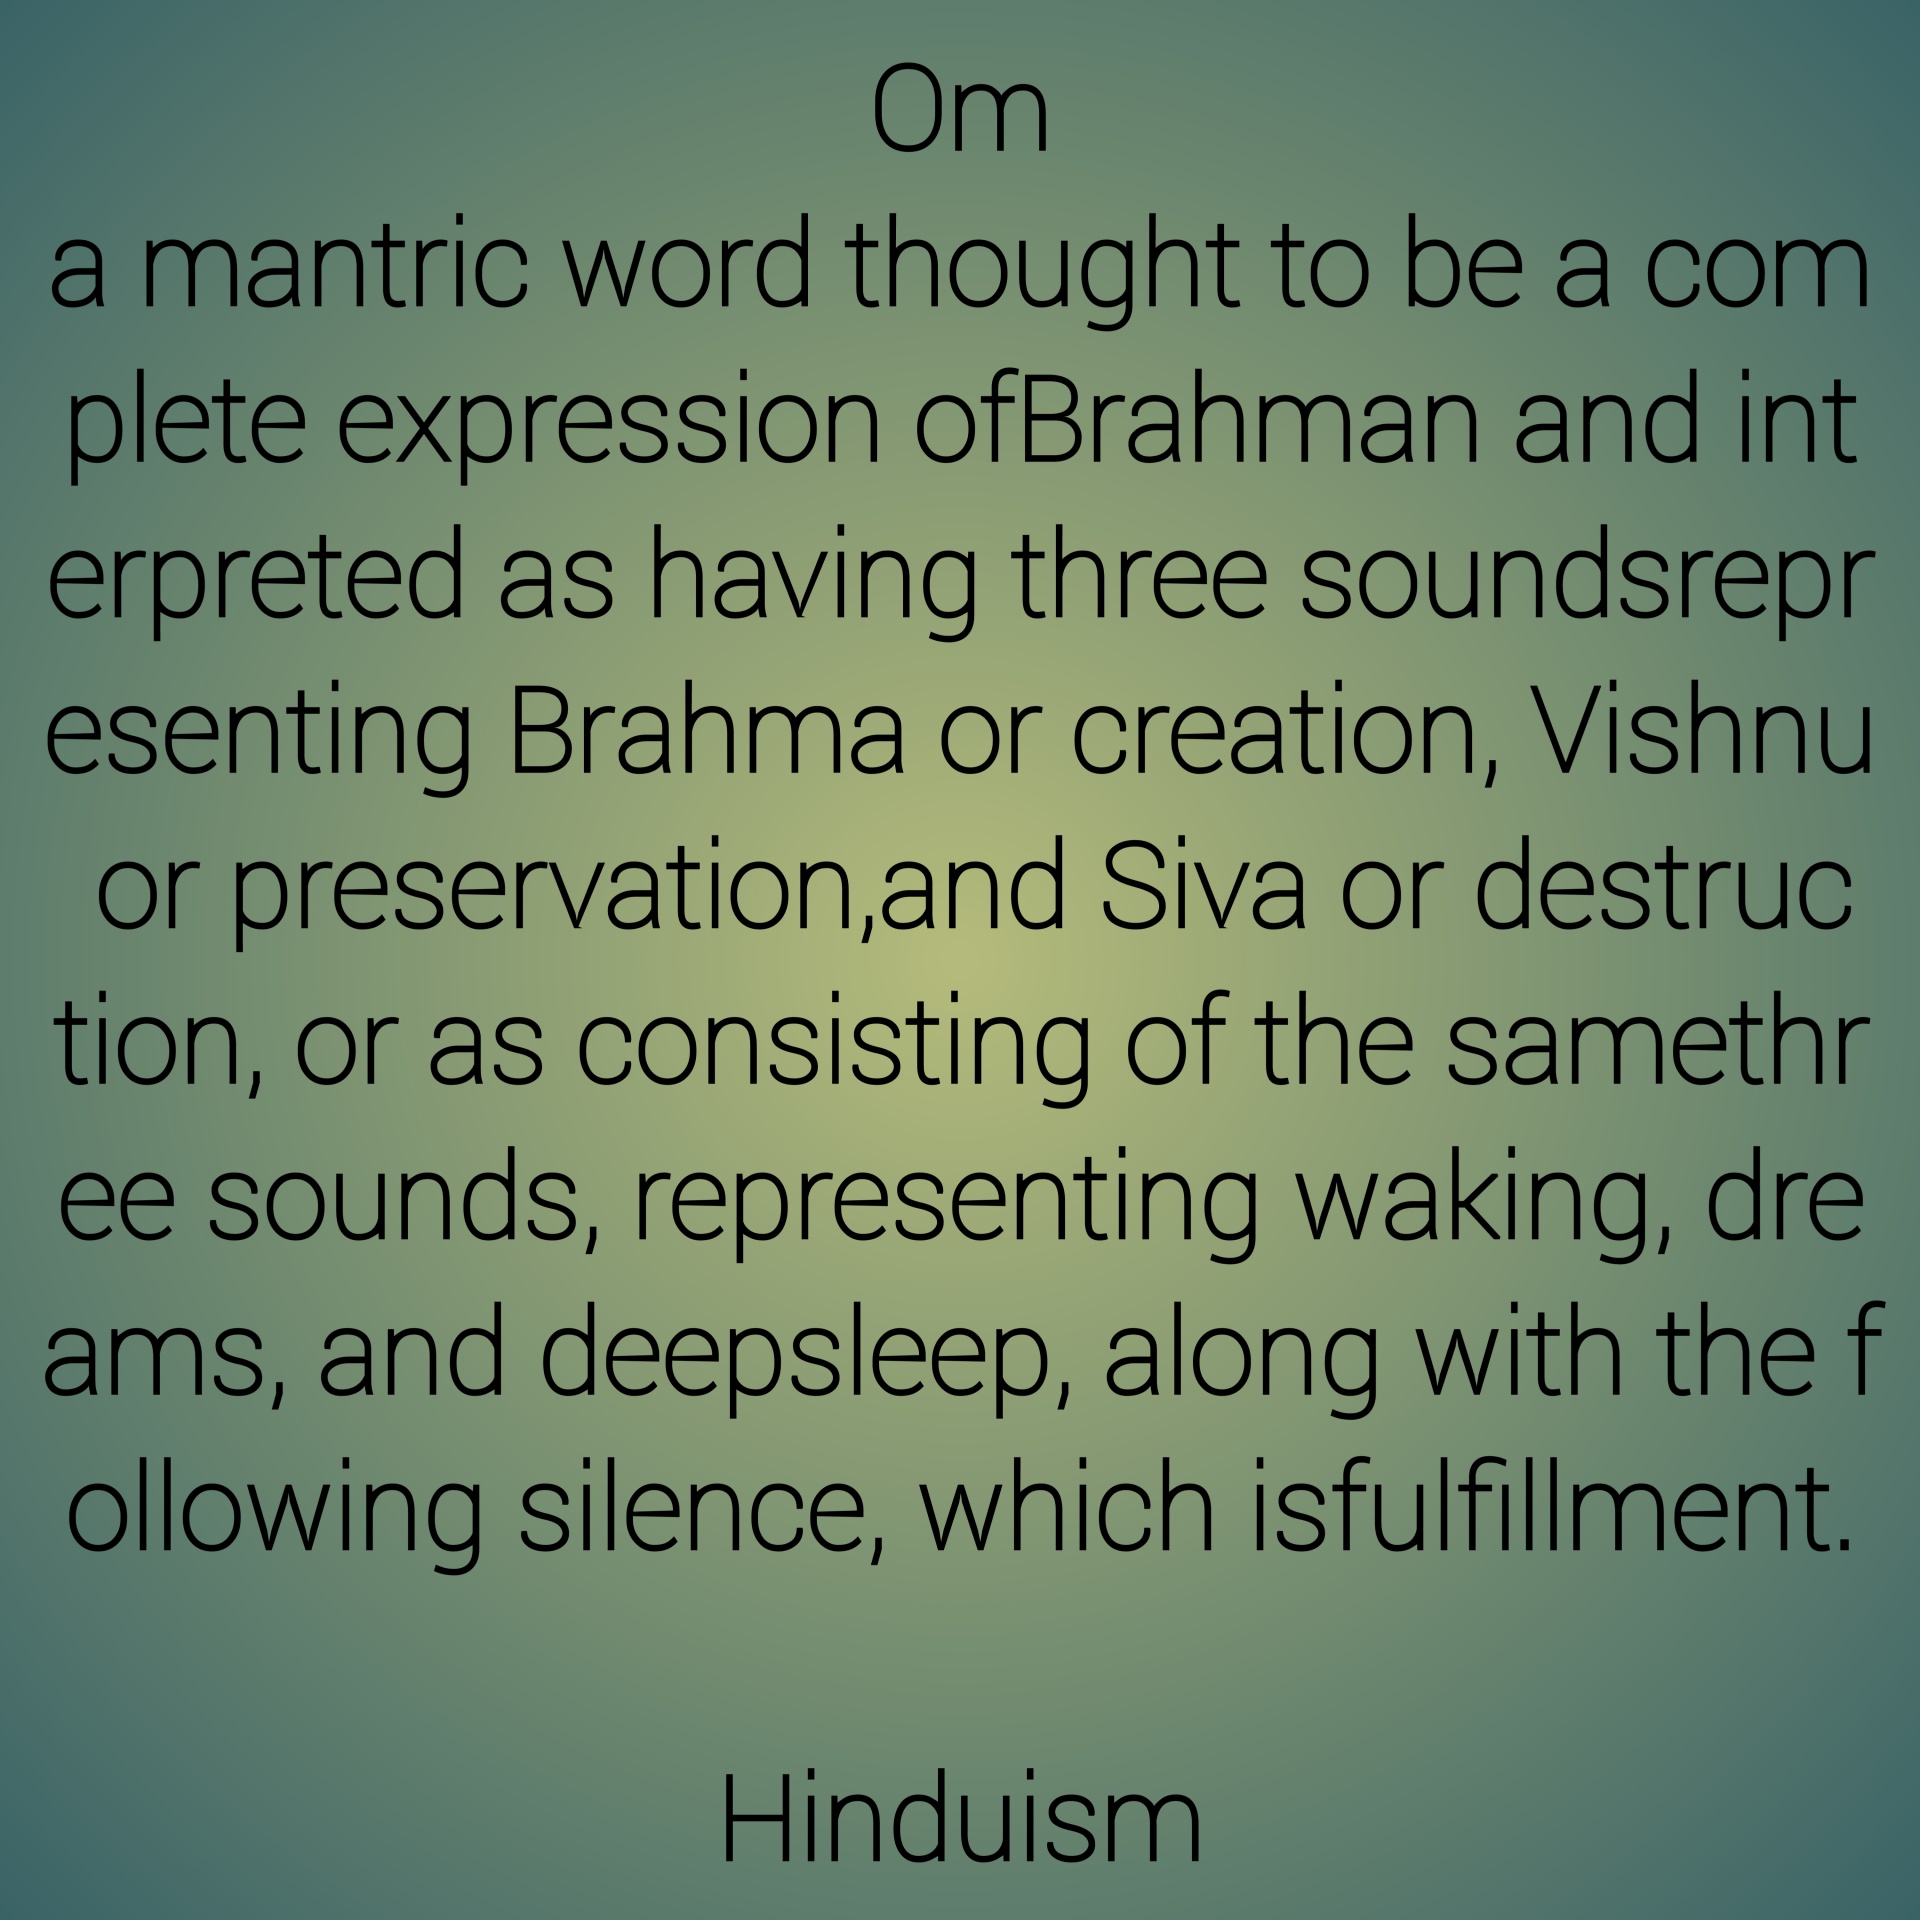 Om definitie in het hindoeïsme